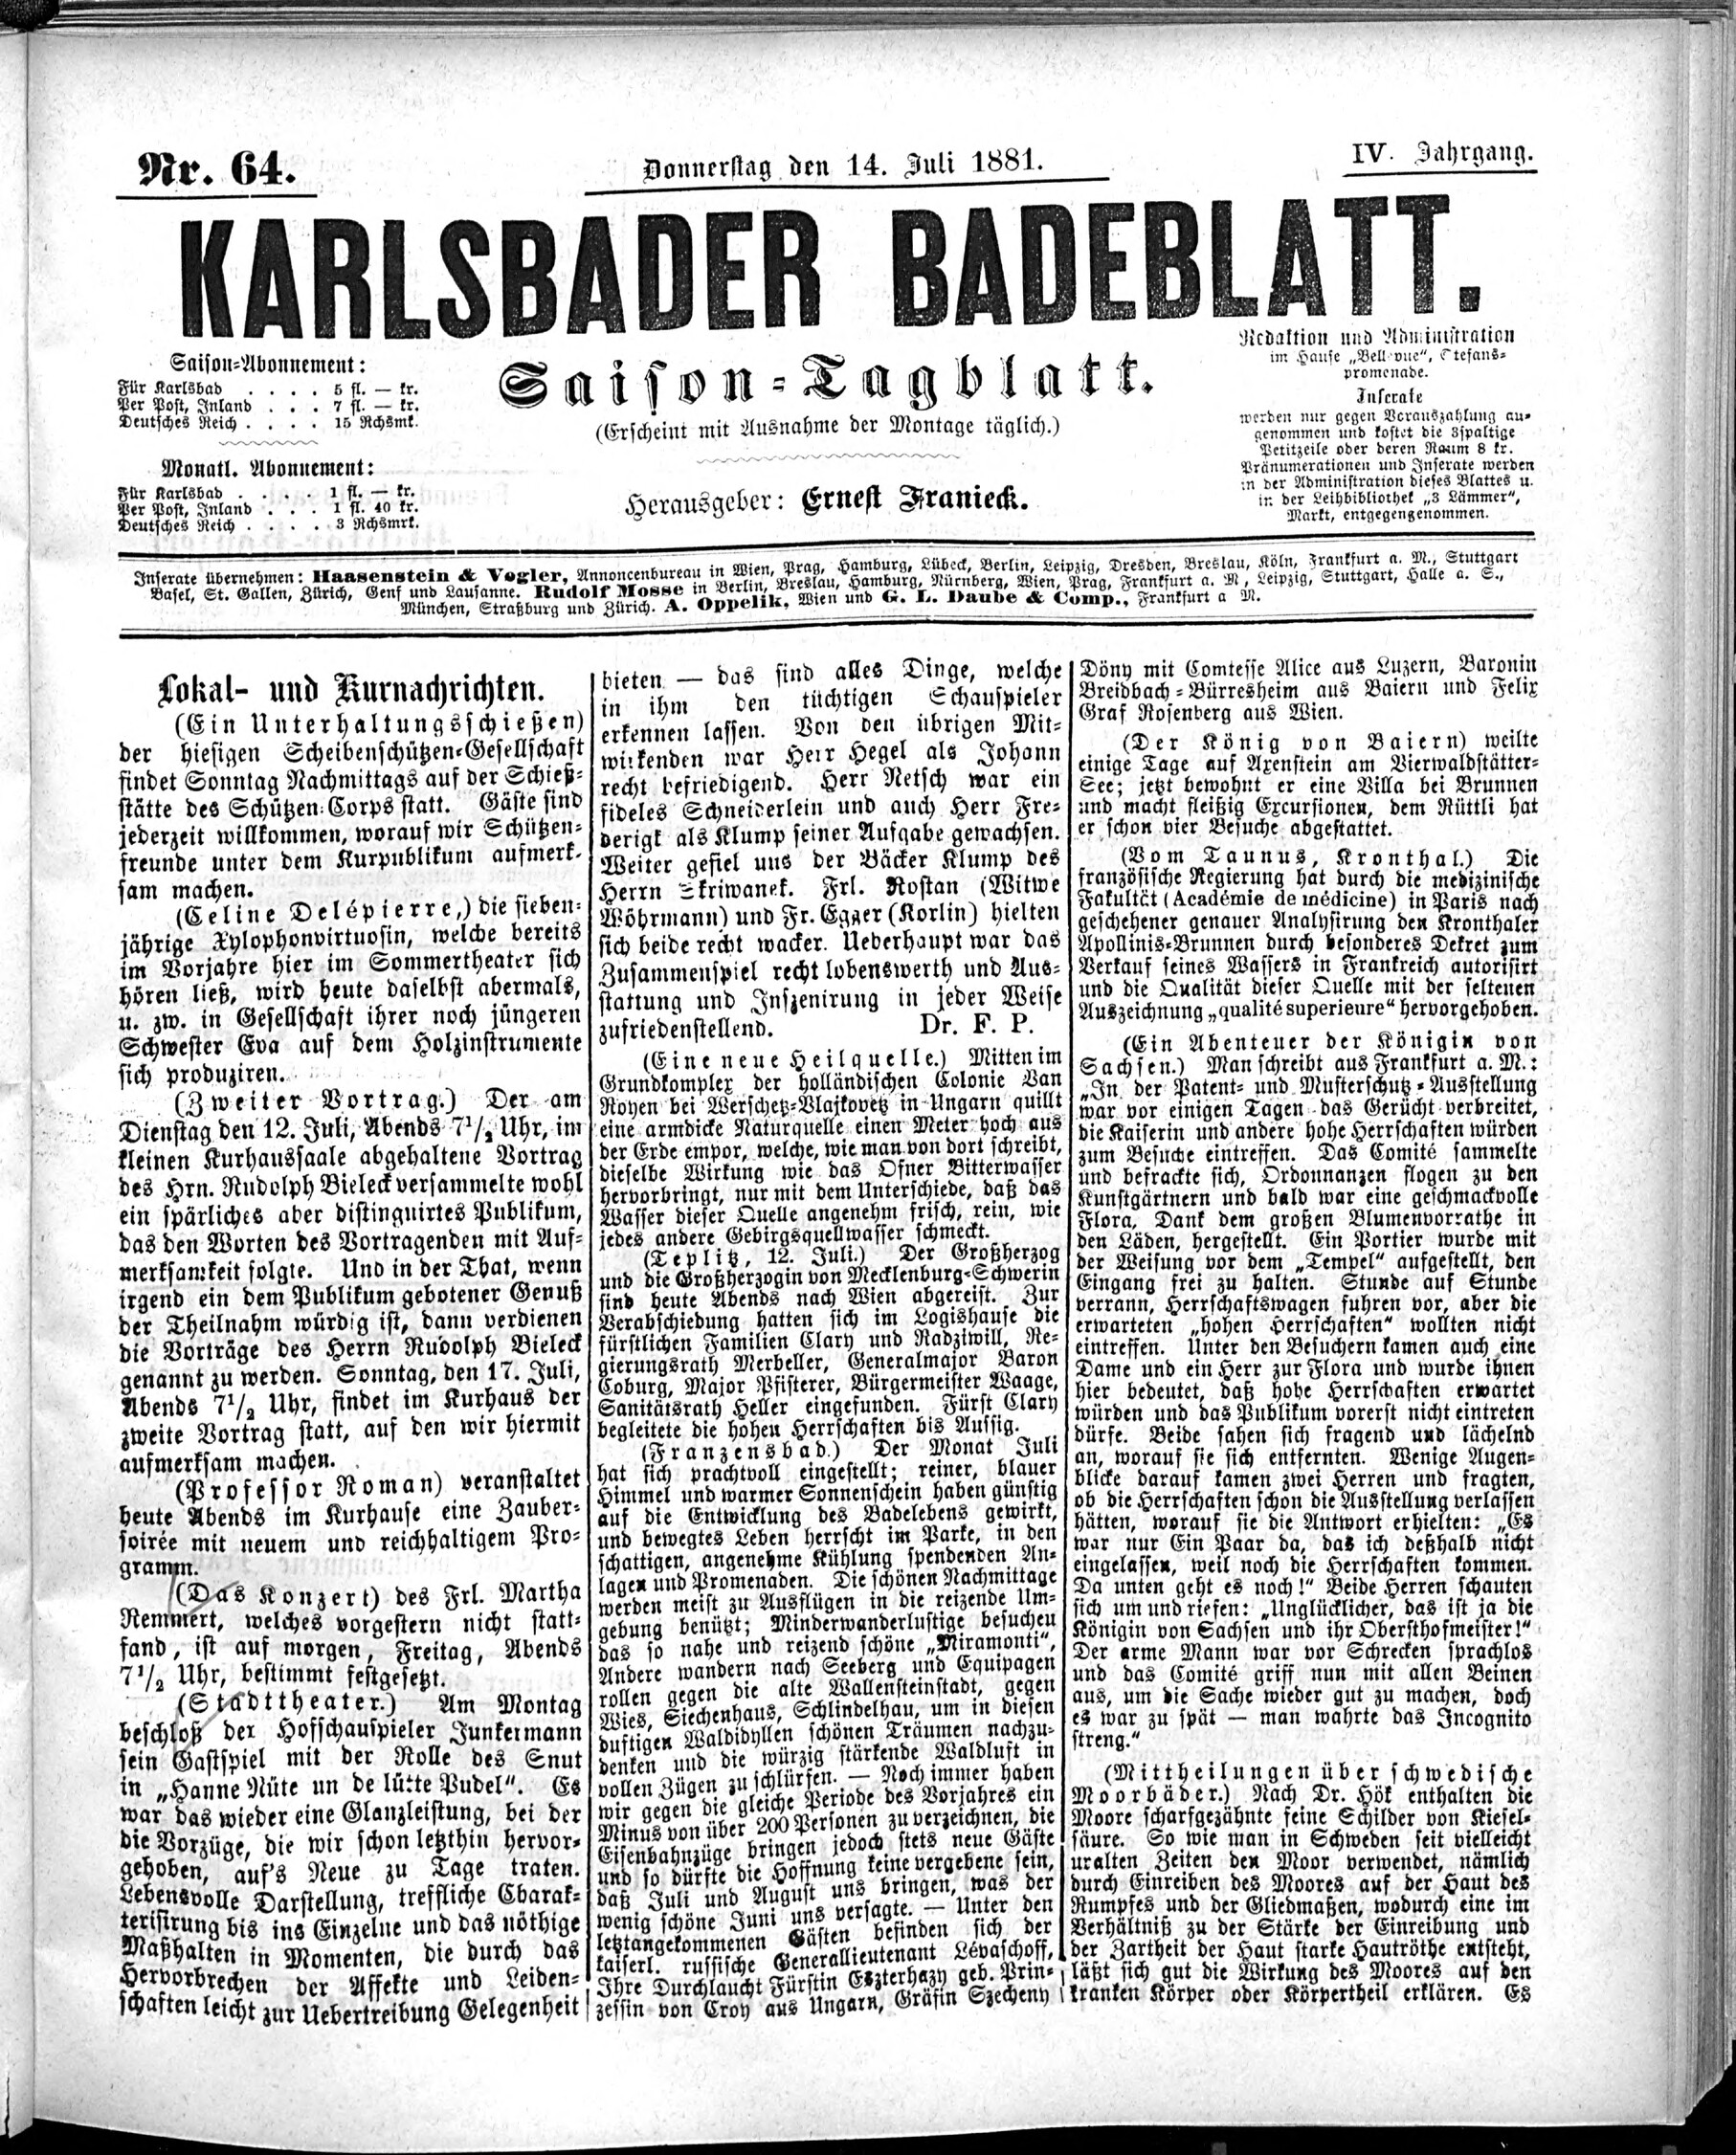 1. karlsbader-badeblatt-1881-07-14-n64_1325